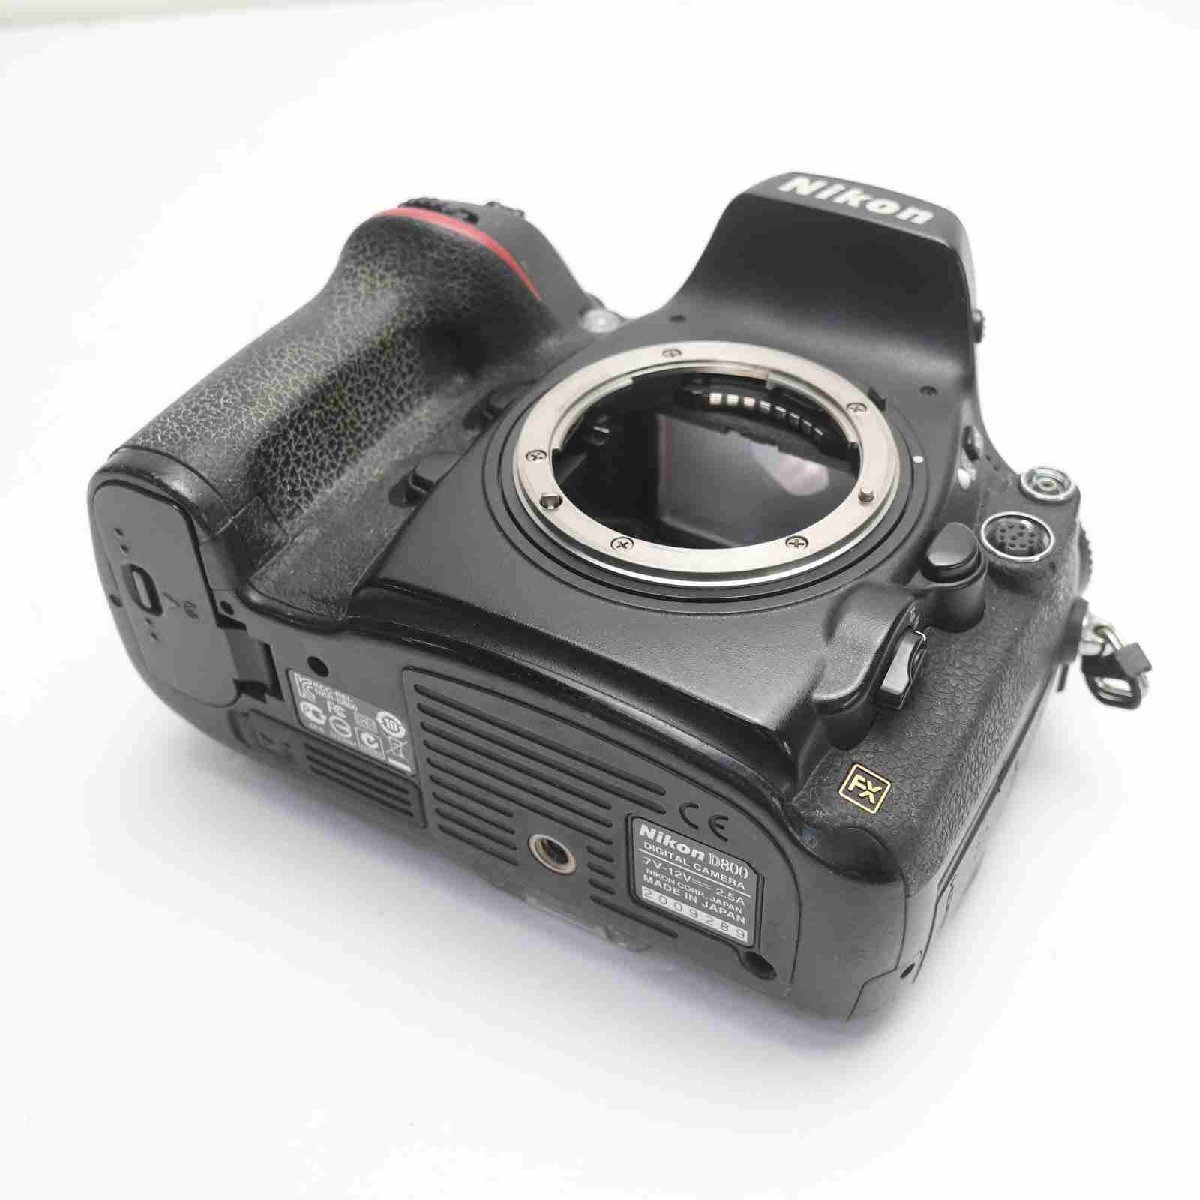 【中古】 良品中古 Nikon D800 ブラック ボディ 安心保証 即日発送 デジ1 Nikon デジタルカメラ 本体 あす楽 土日祝発送OK